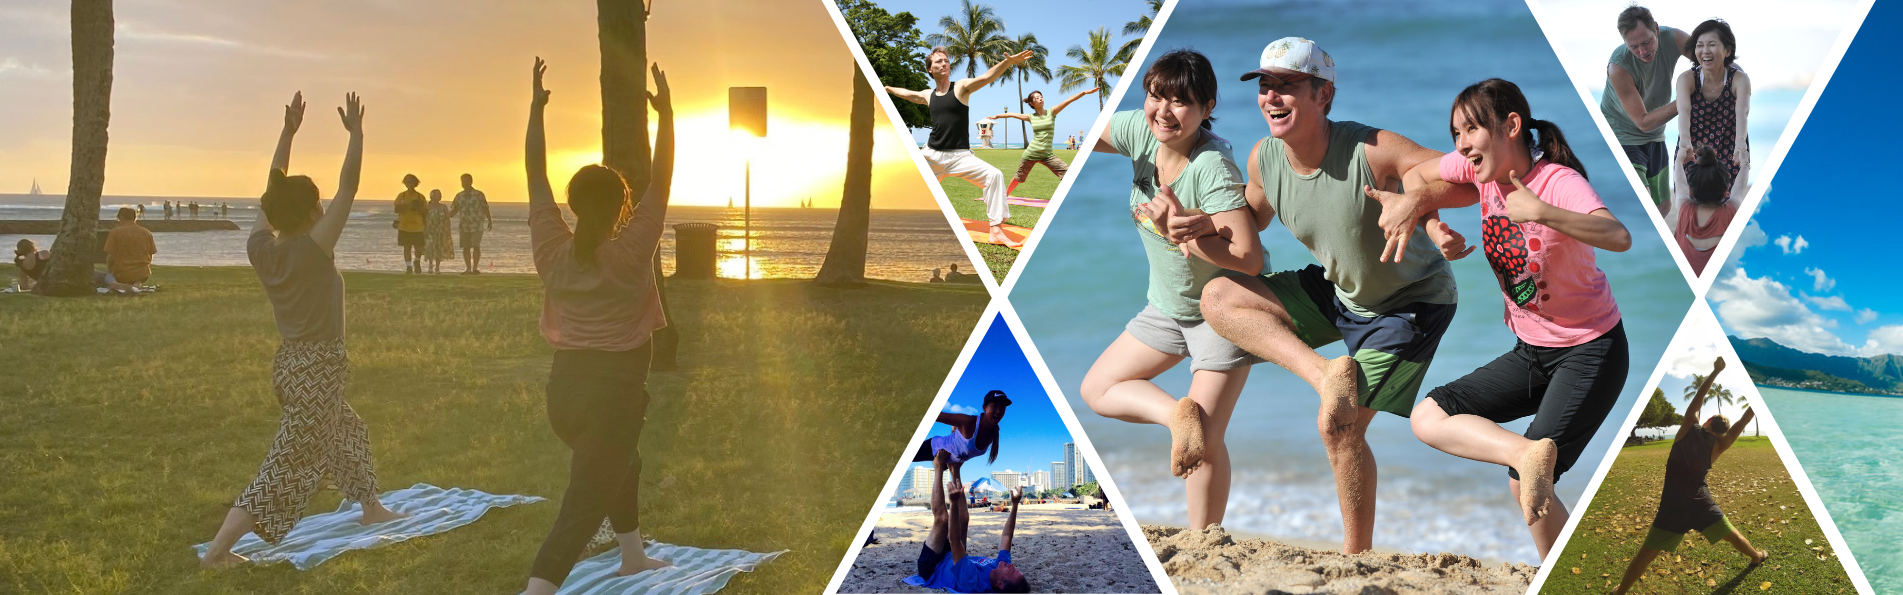 beach yoga & park yoga in waikiki hawaii